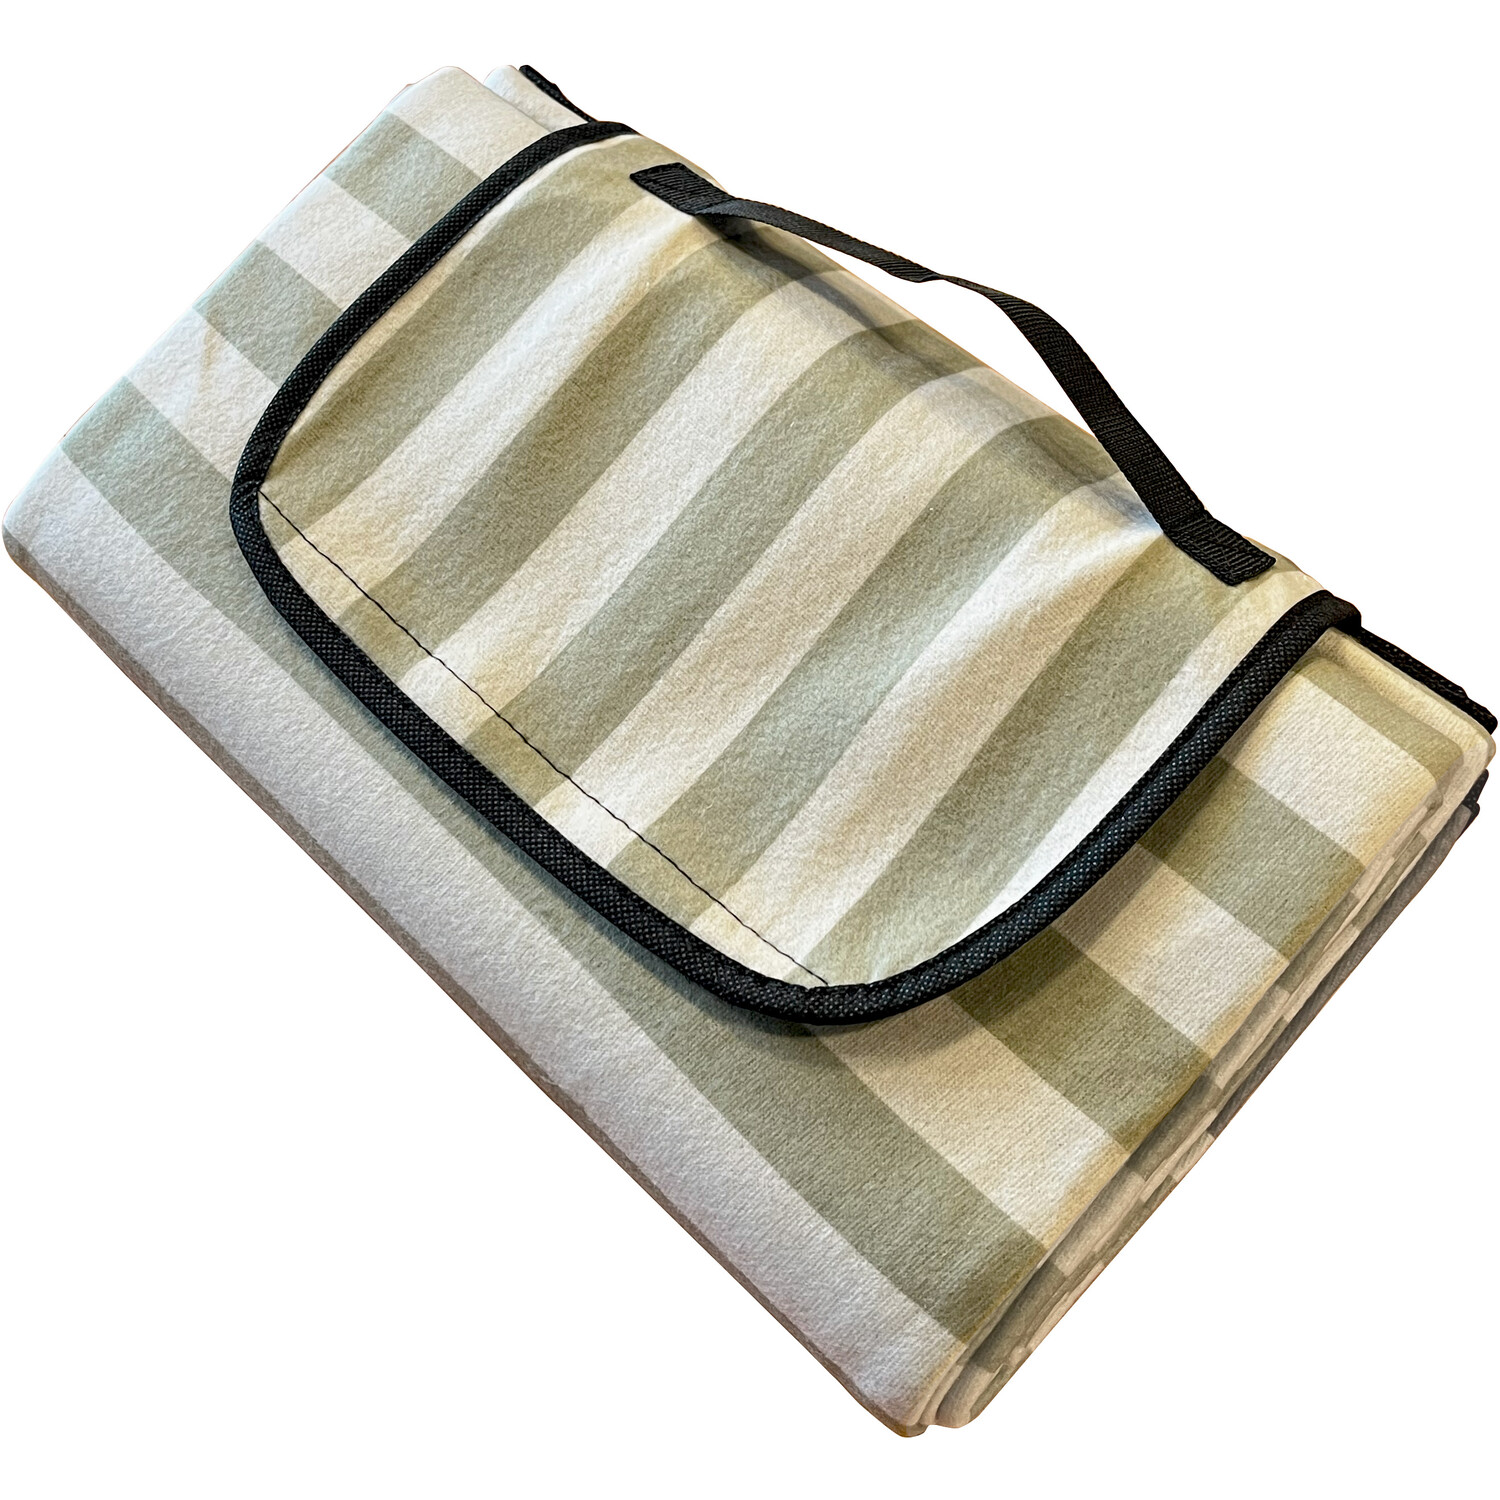 Folding Picnic Blanket Image 2